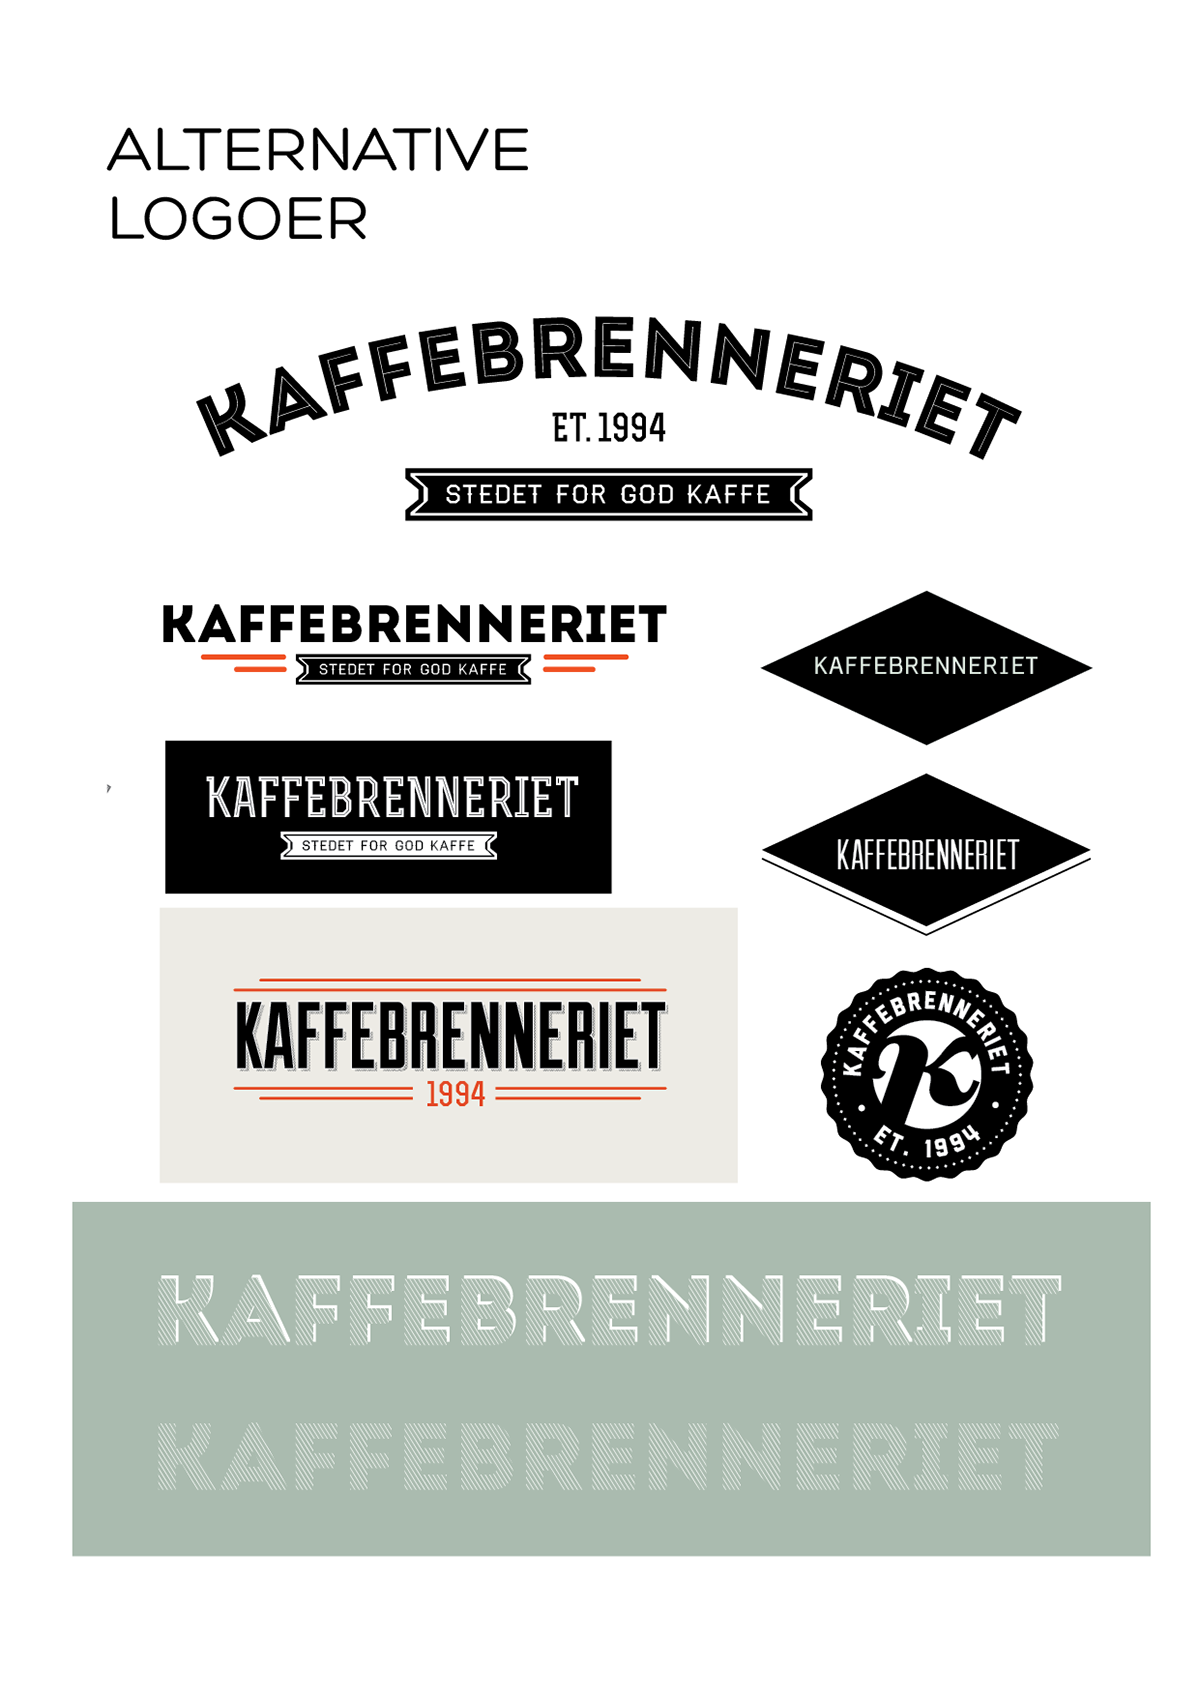 Coffee  coffee bar  coffeebar  oslo kaffebrenneriet  Norway  logo  design program